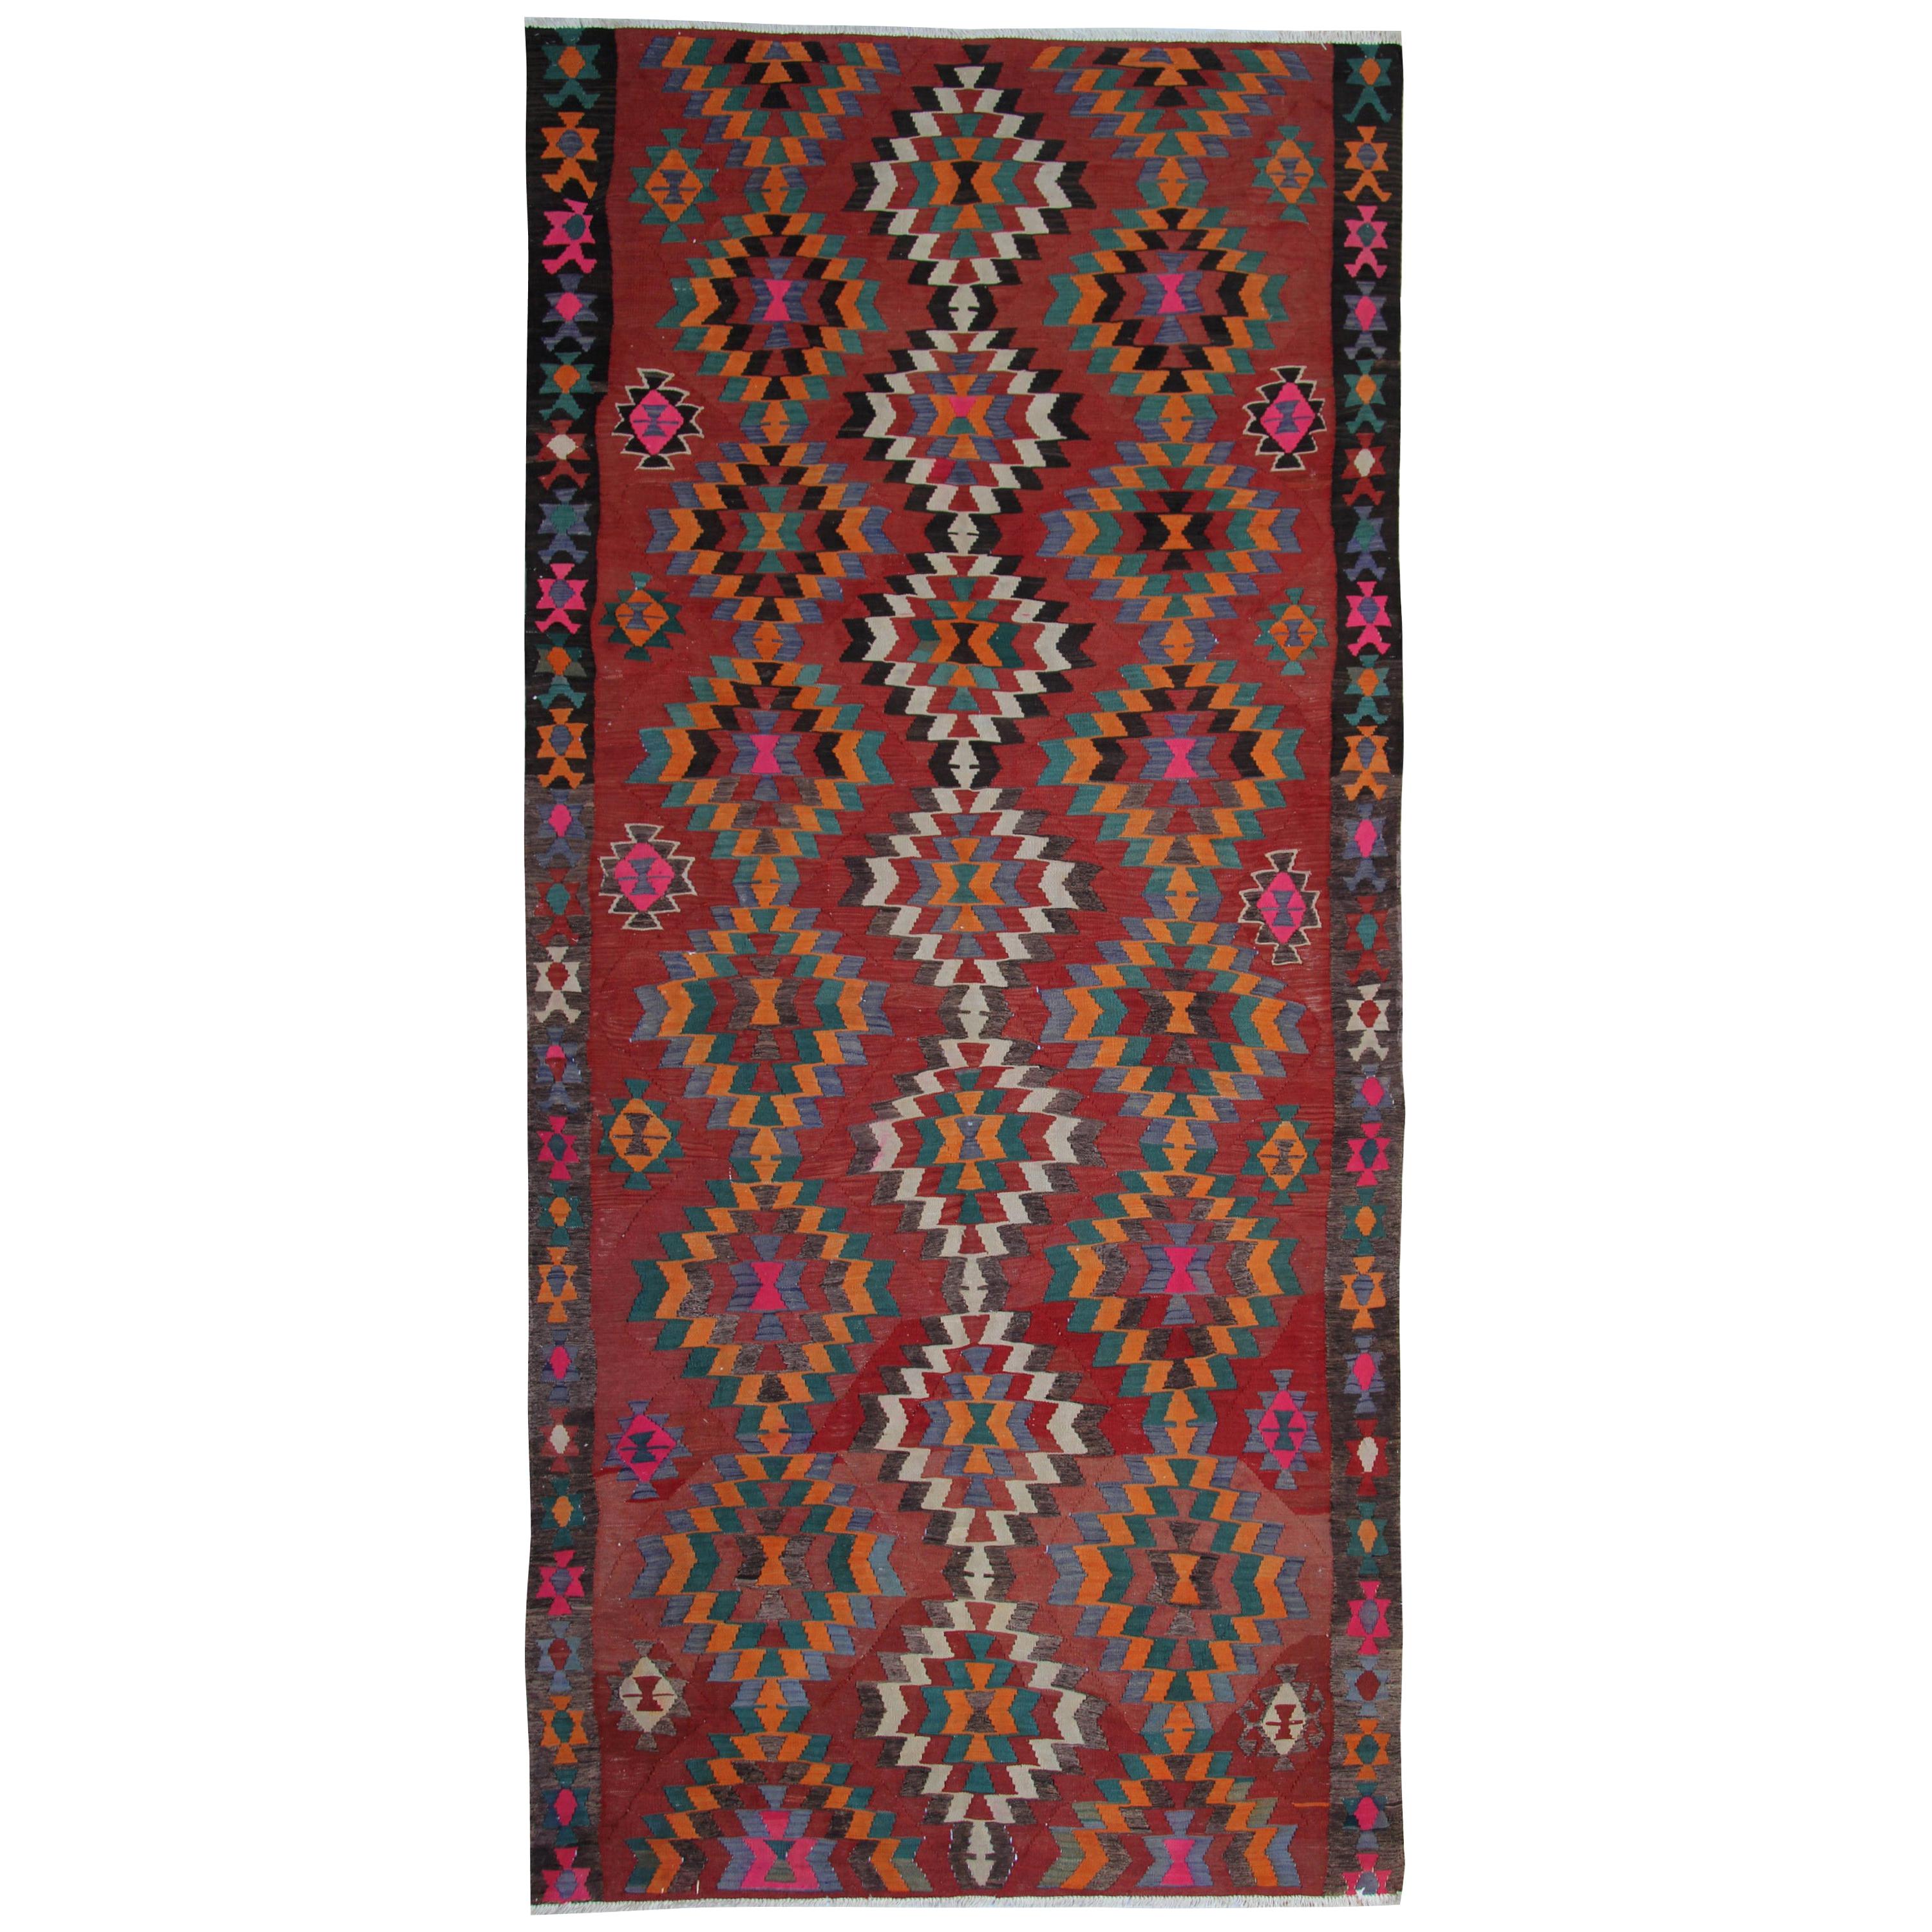 Antique Rugs Vintage Oriental Rug Handwoven Carpet  Turkish Kilim Rug Runner  For Sale